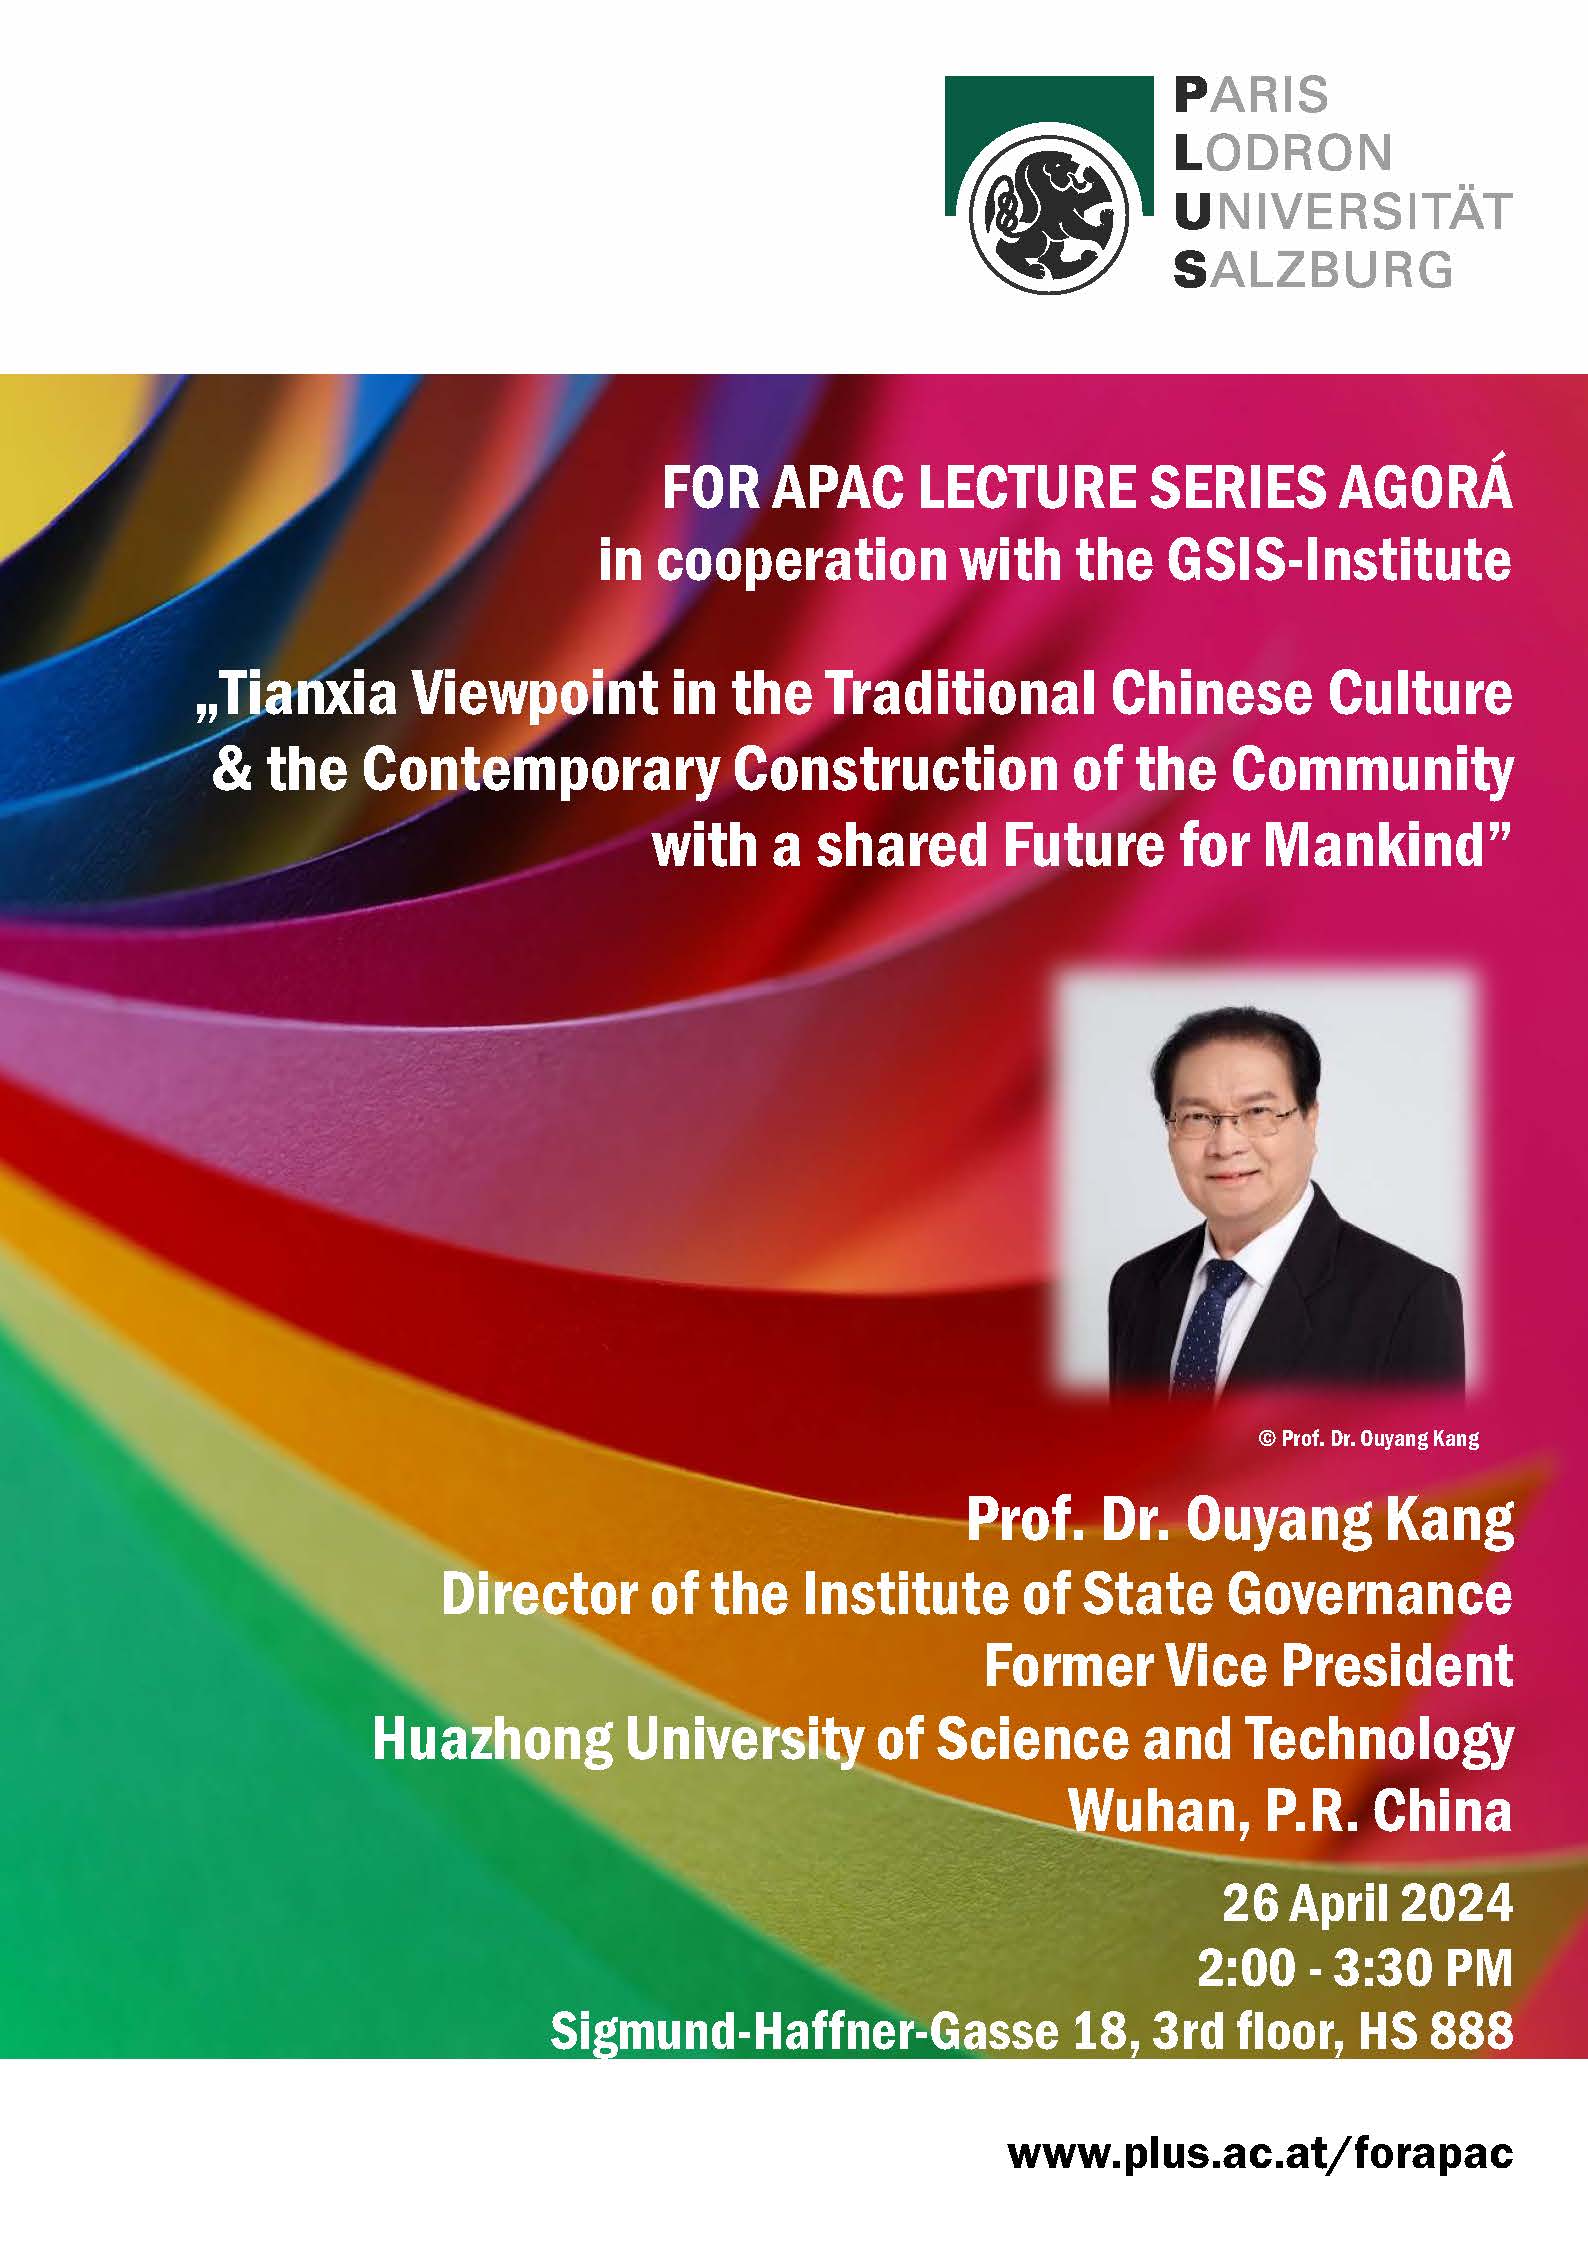 Prof. Ouyang Kang Agorá Poster